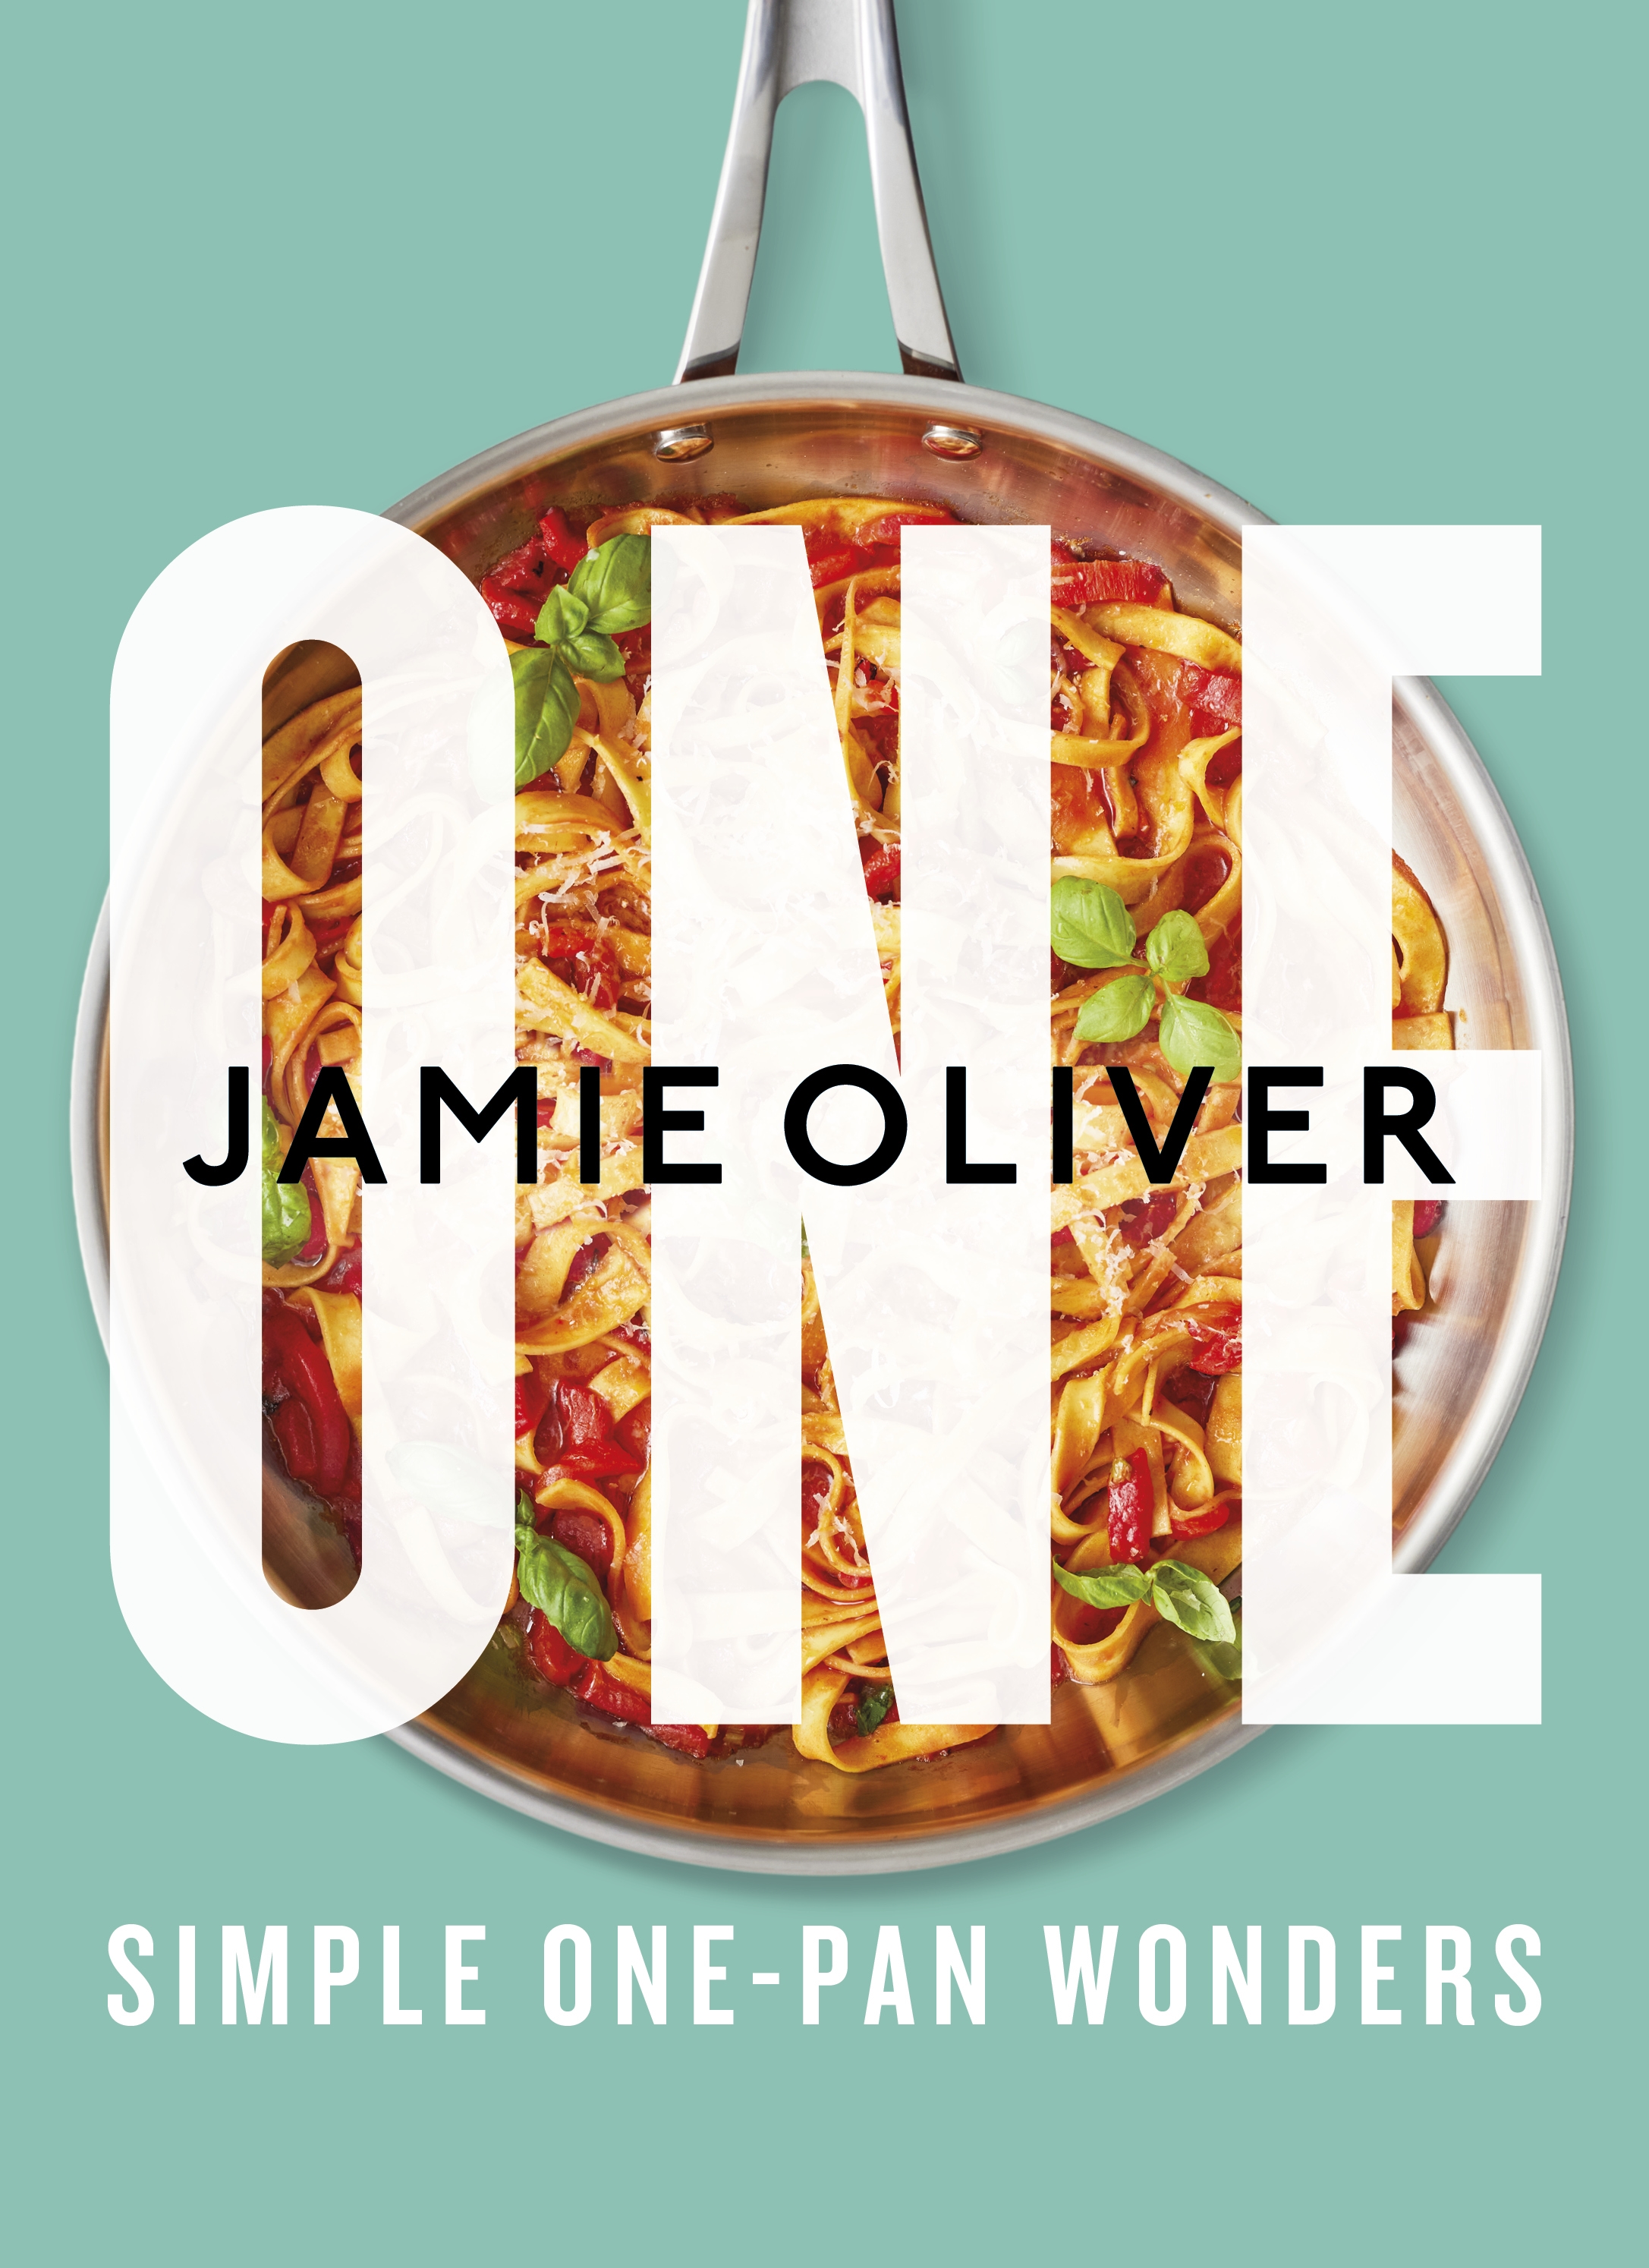 One: Simple One-Pan Wonders [American Measurements] cover image